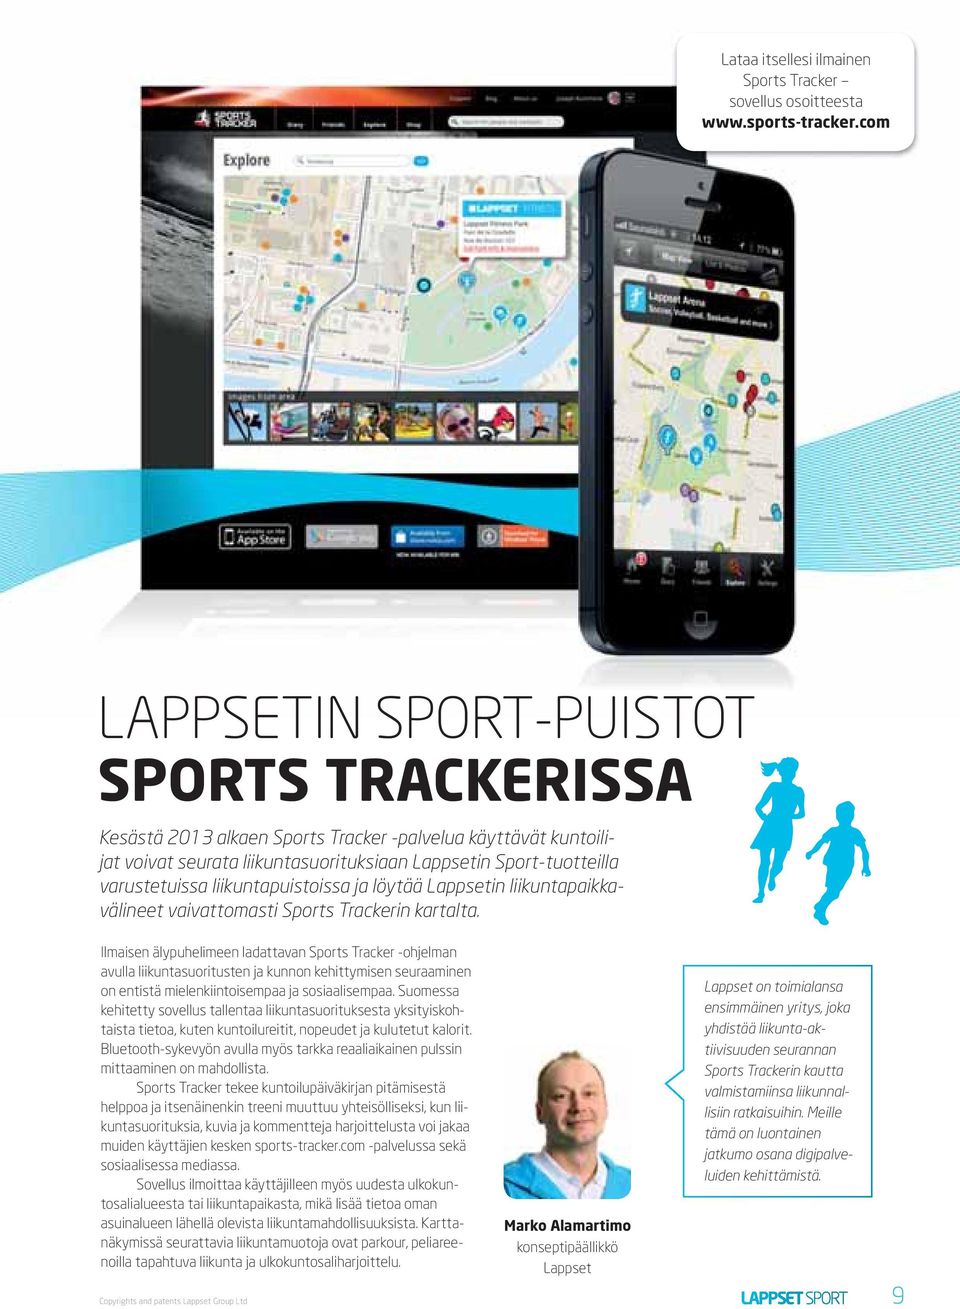 liikuntapuistoissa ja löytää Lappsetin liikuntapaikkavälineet vaivattomasti Sports Trackerin kartalta.